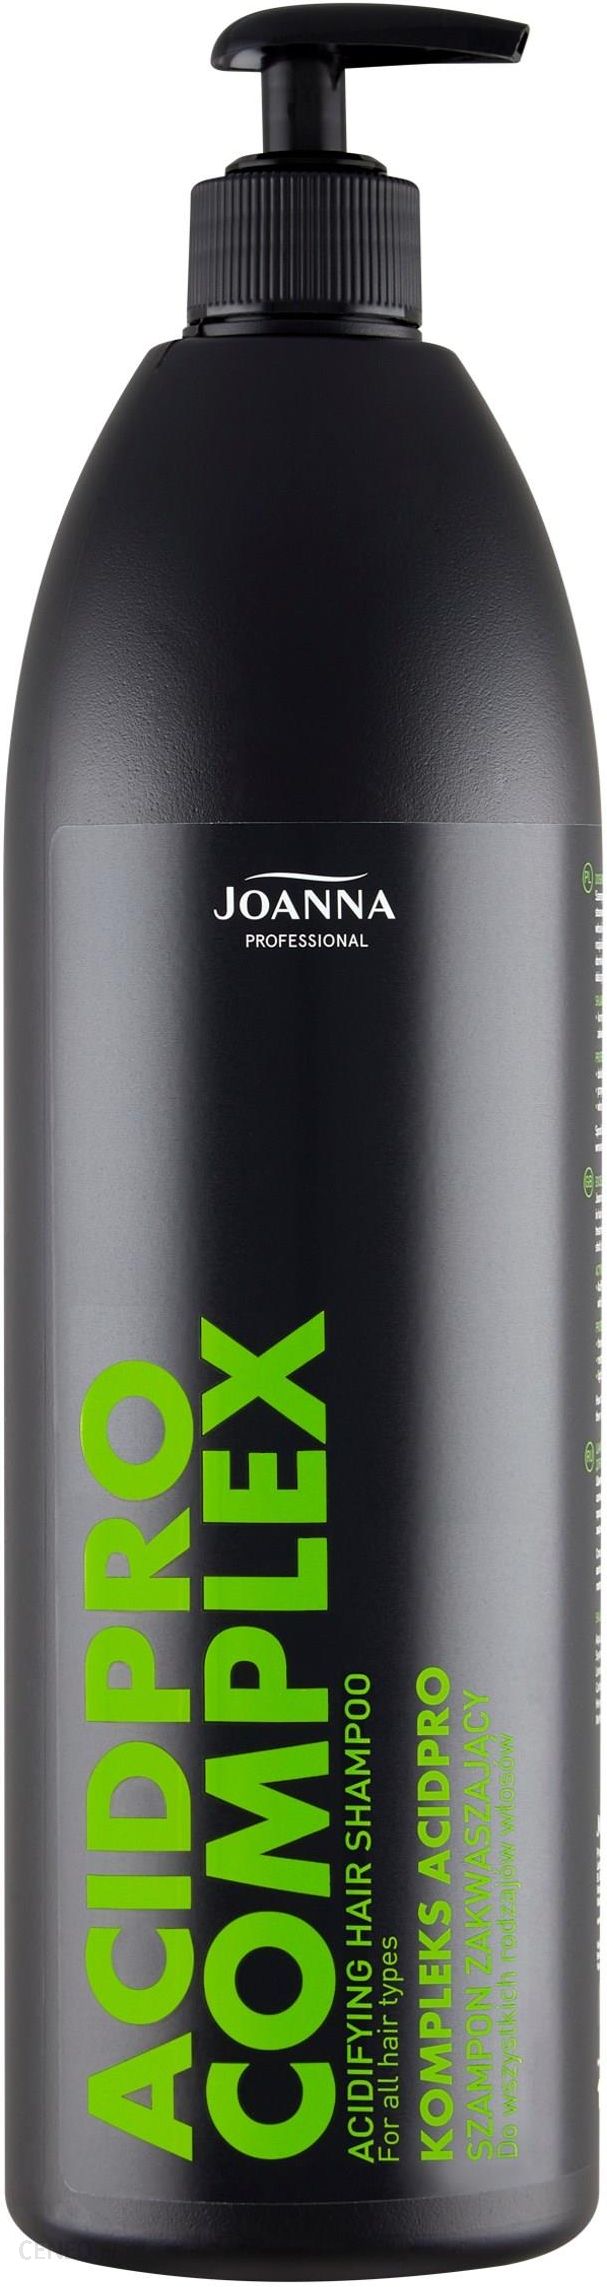 joanna professional szampon zakwaszający z kompleksem acidpro